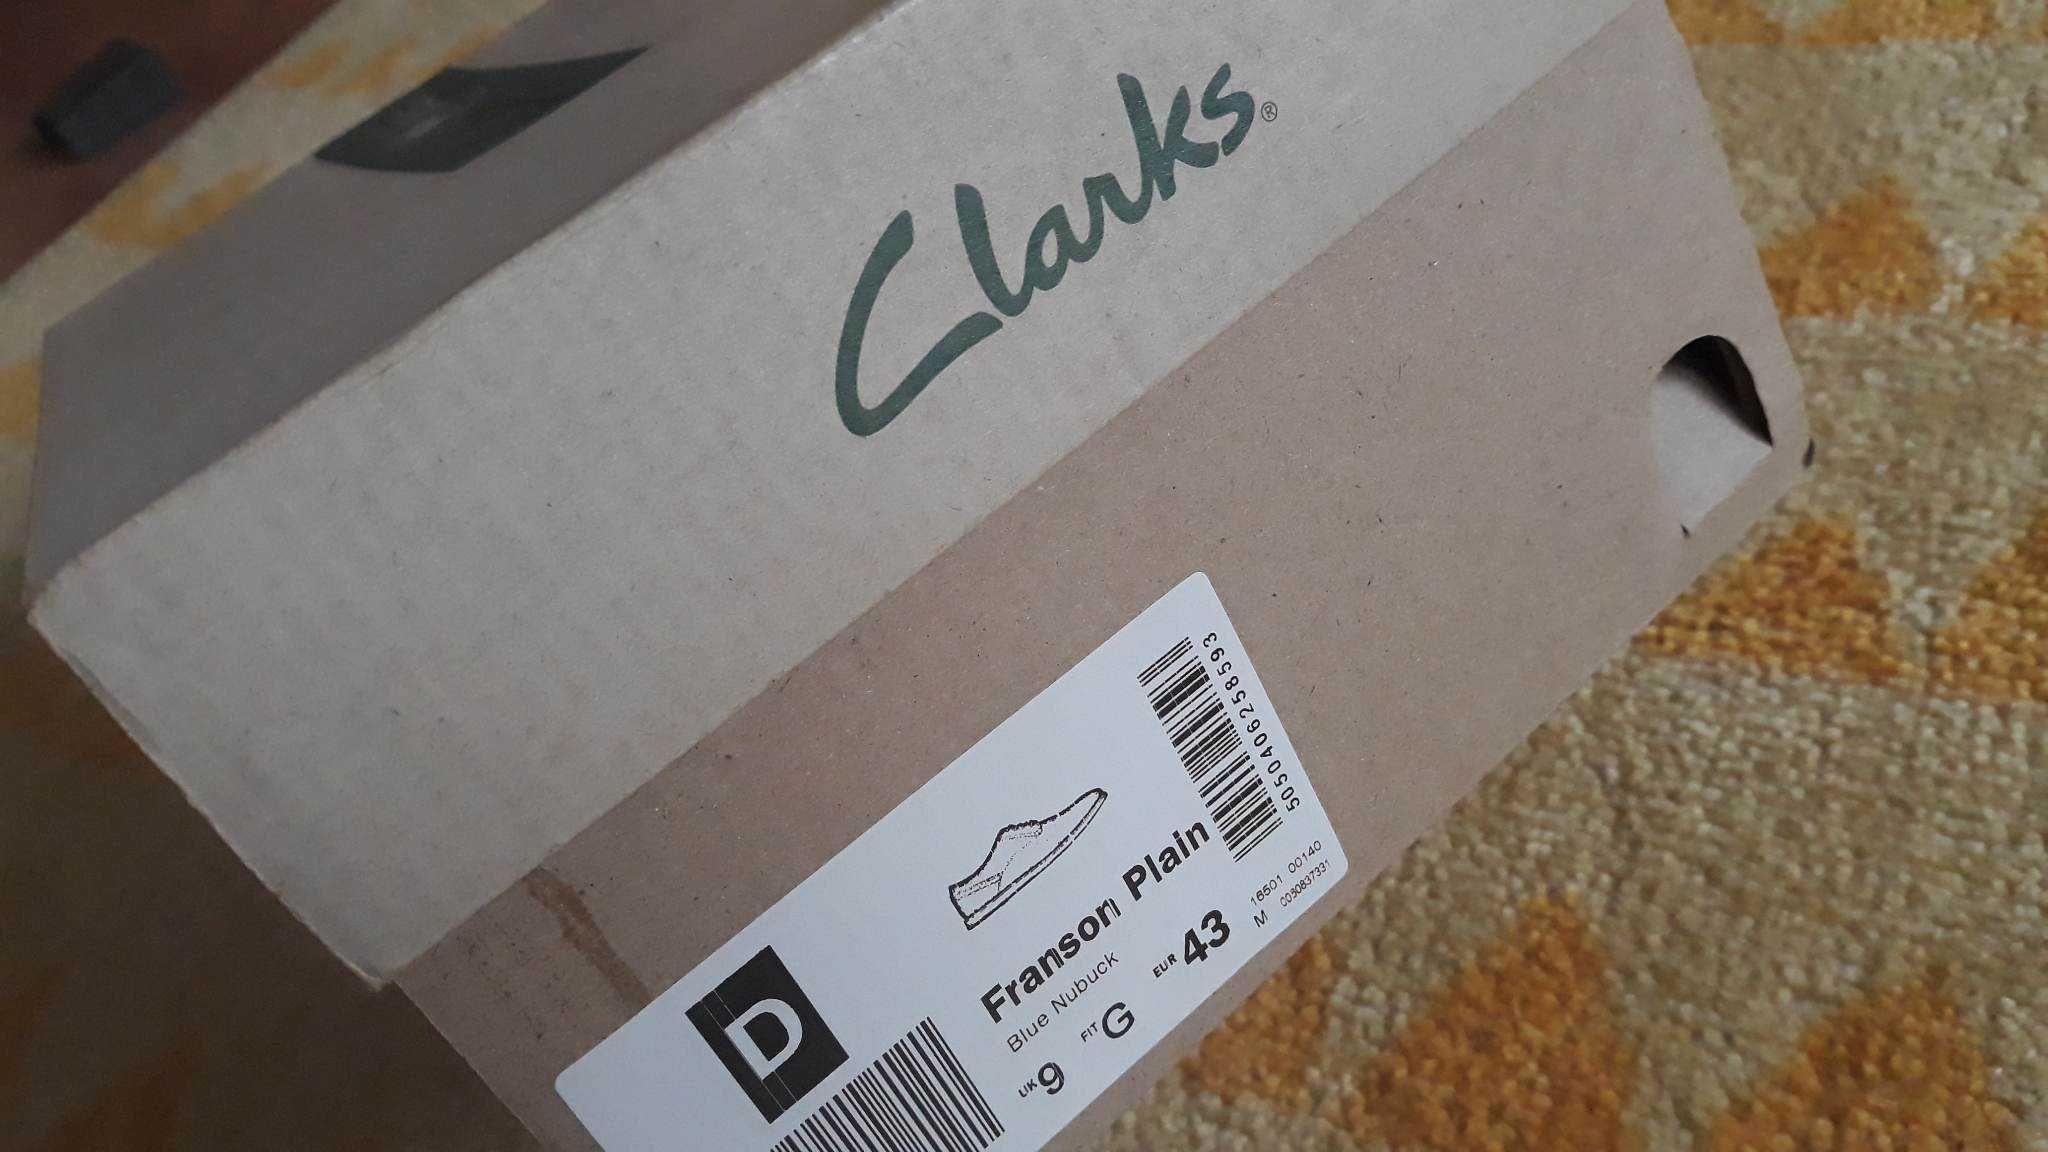 Мъжки официални/ежедневни кожени обувки Clarks - Franson Plain, №43